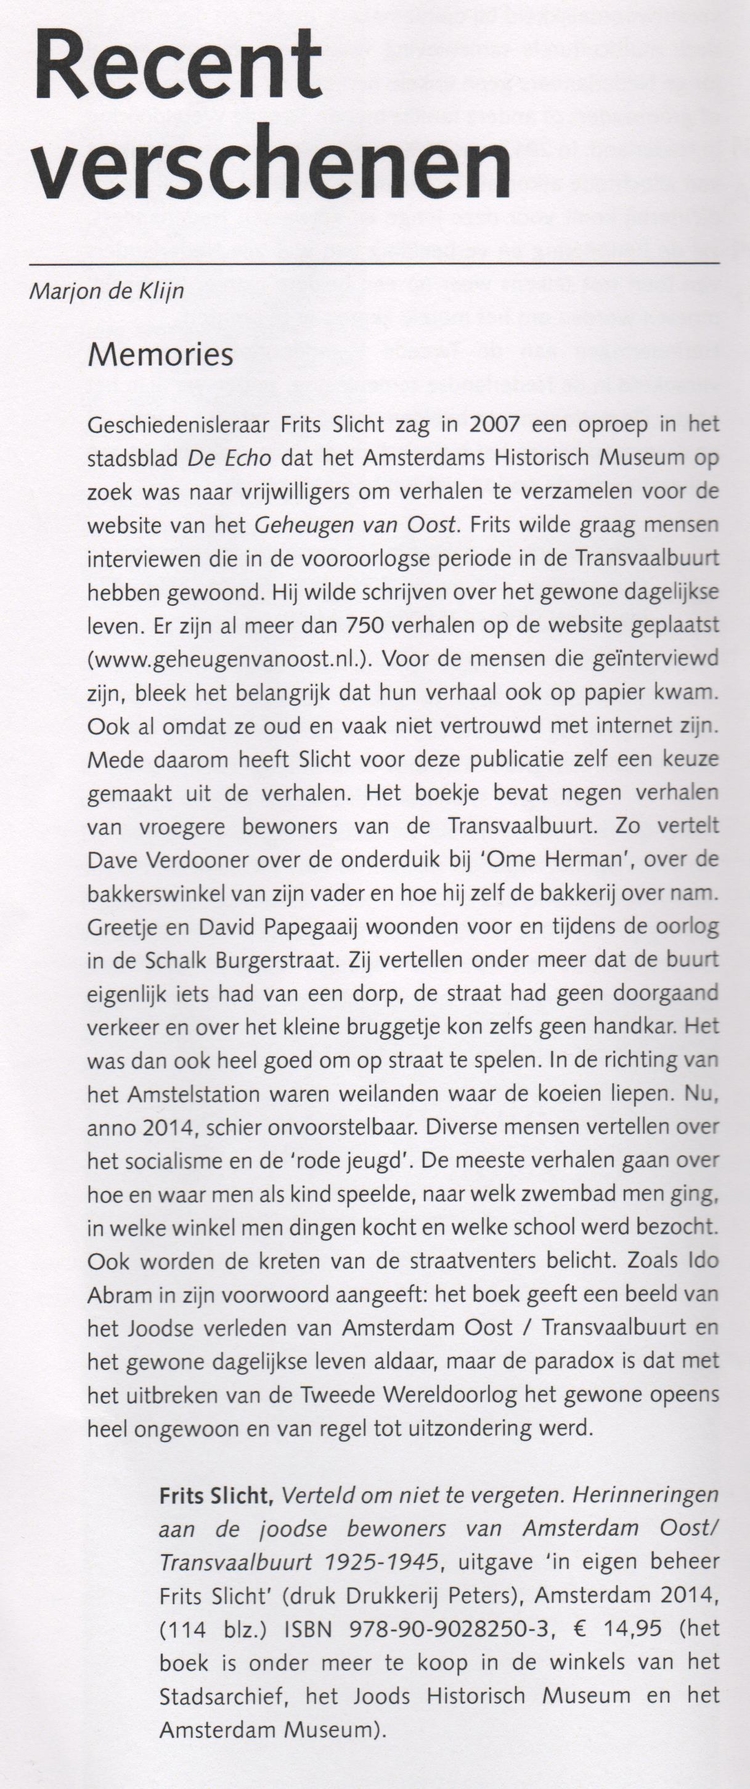 Auschwitz Bulletin jaargang 58, nr.4 dec. 2014 Mooie recensie en ook goed geschreven door Marjon de Klijn. 